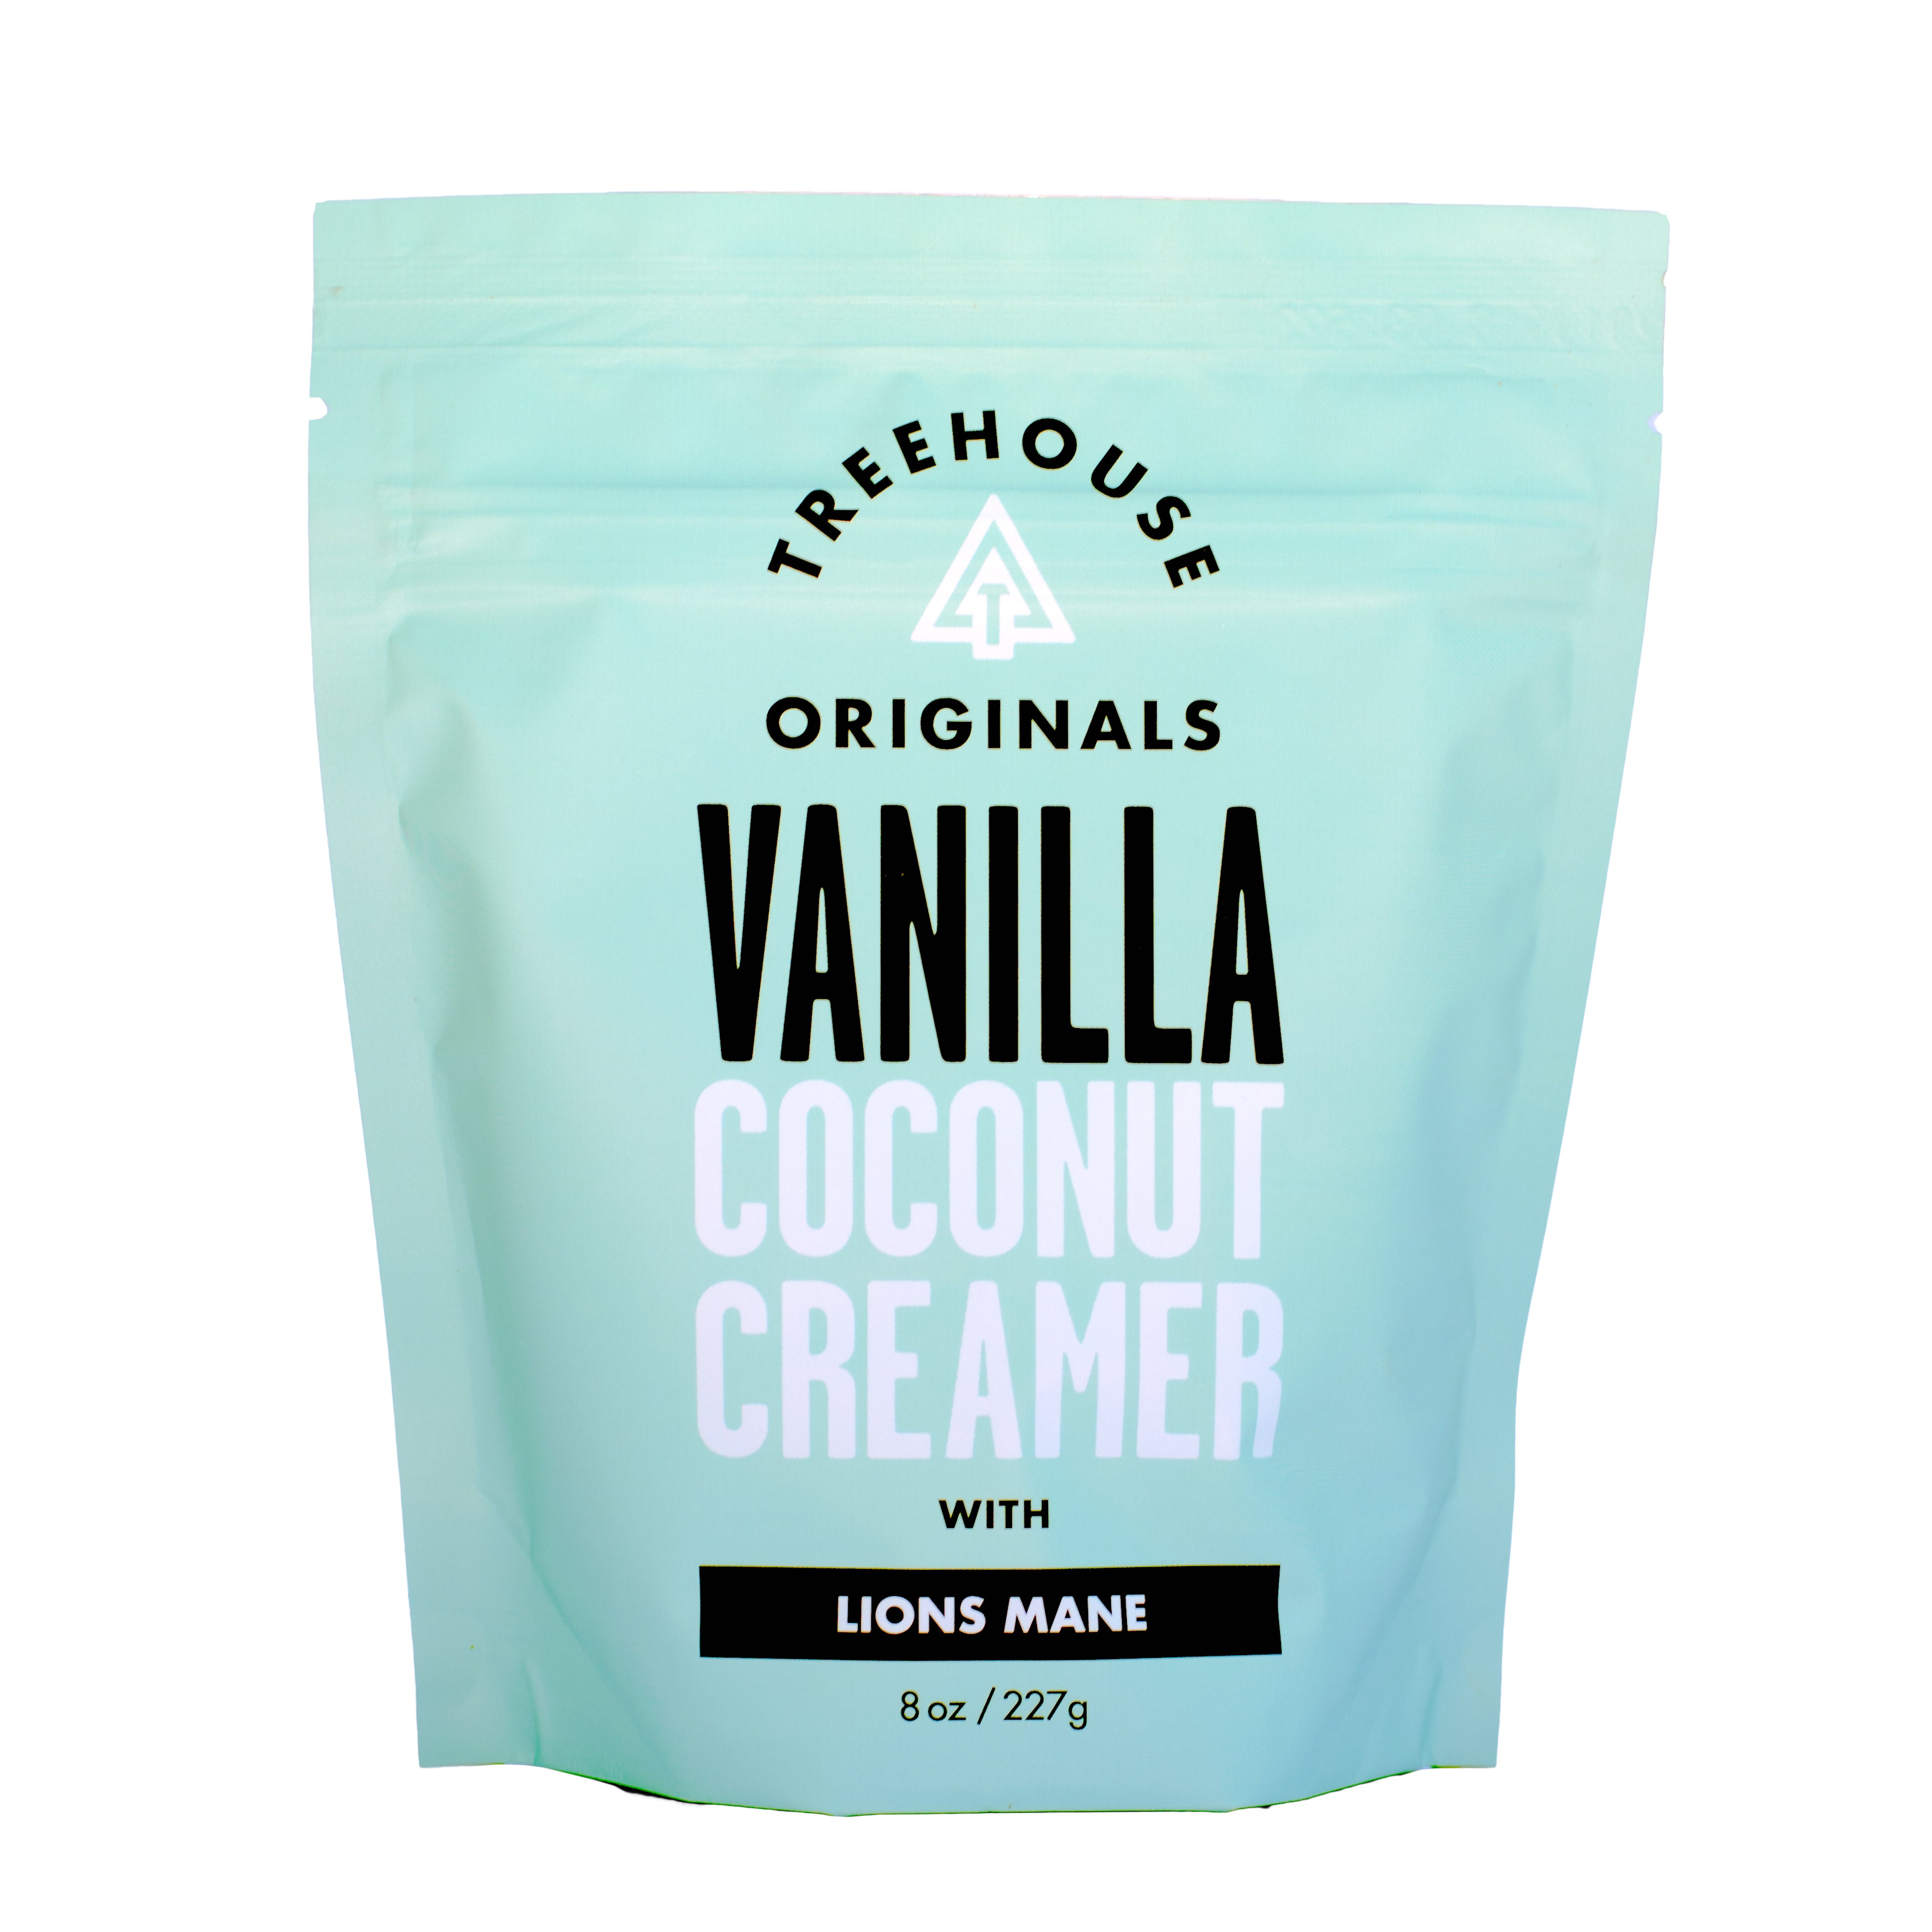 Vanilla Creamer